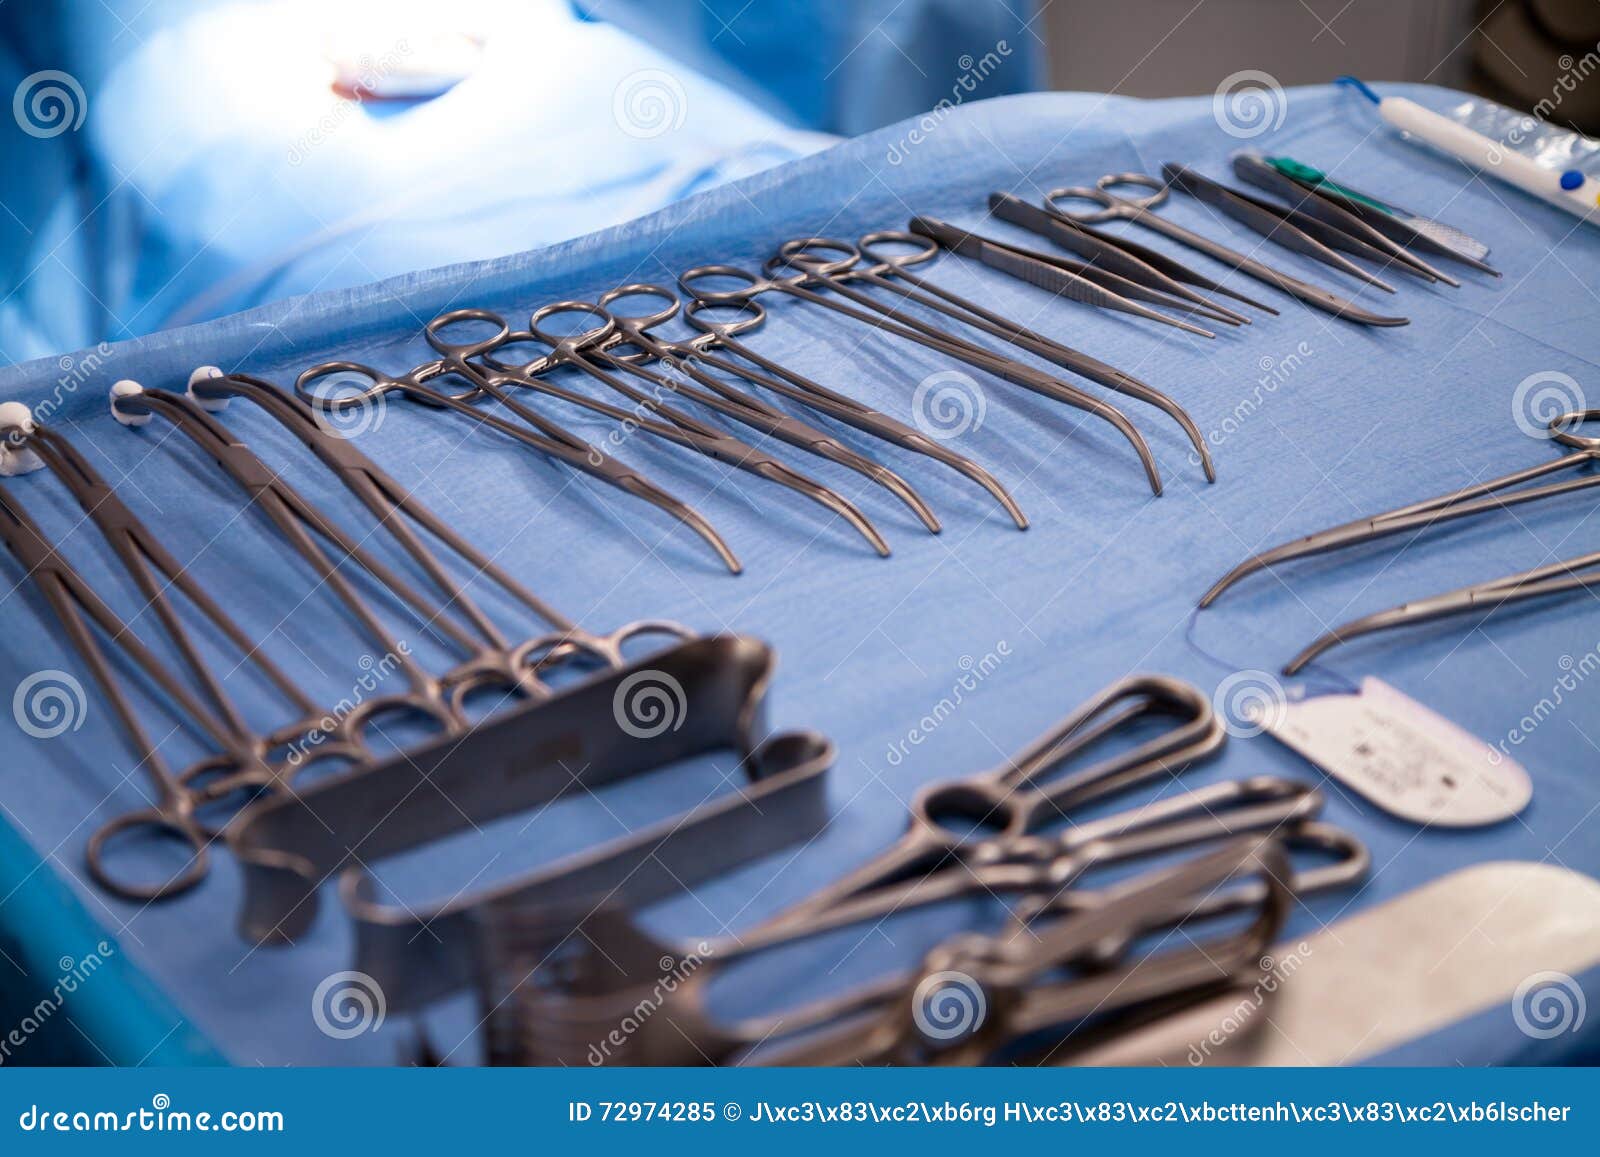 Металлические хирургические инструменты